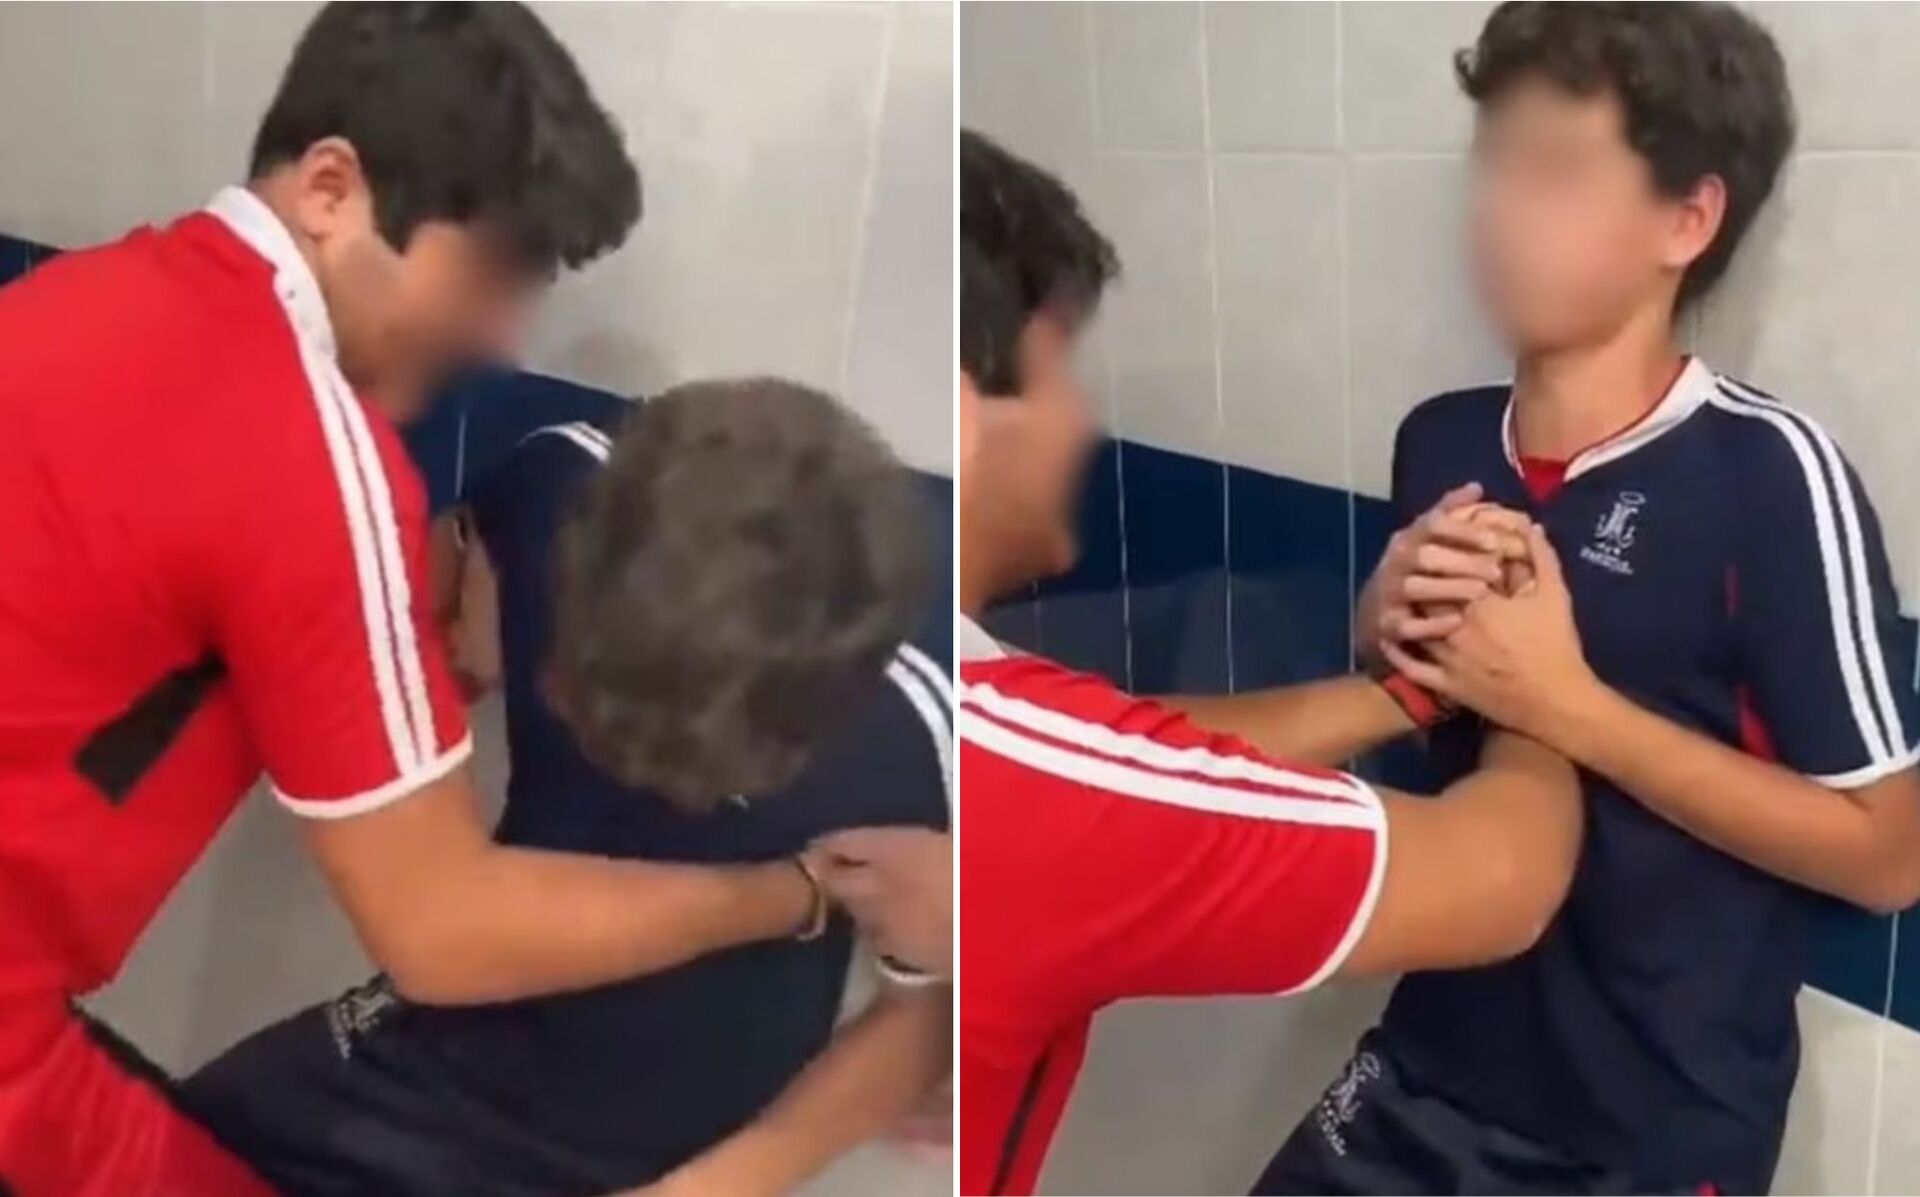 En algunos de los videos que se han vuelto virales en TikTok, se aprecia cómo un estudiante aprieta el pecho de su compañero, que segundos después se desvanece.